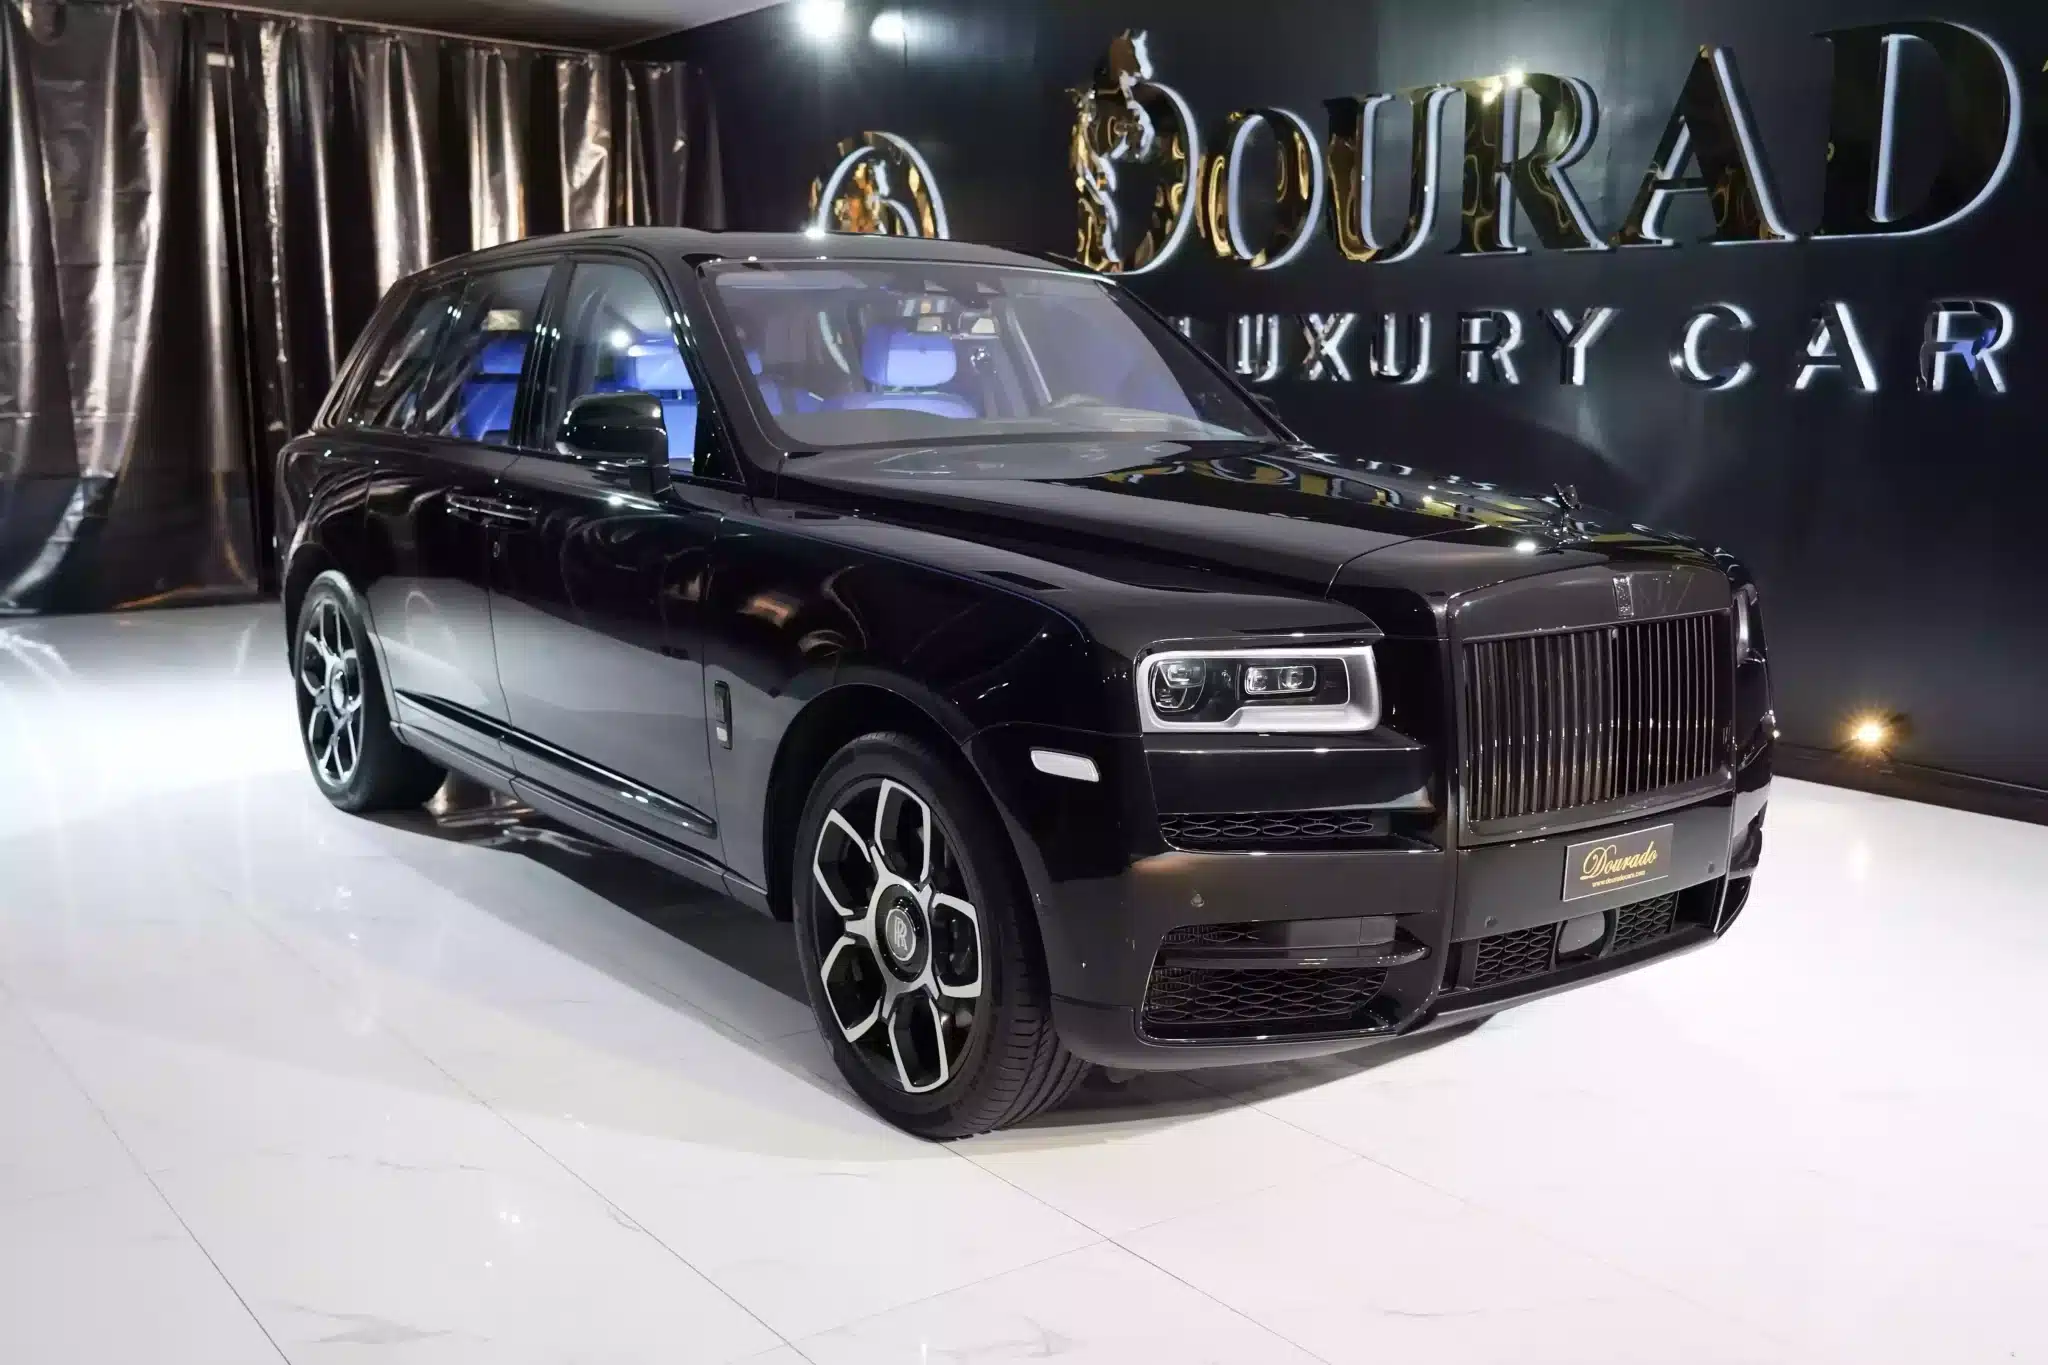 Rolls Royce Luxury Cars For sale in Dubai